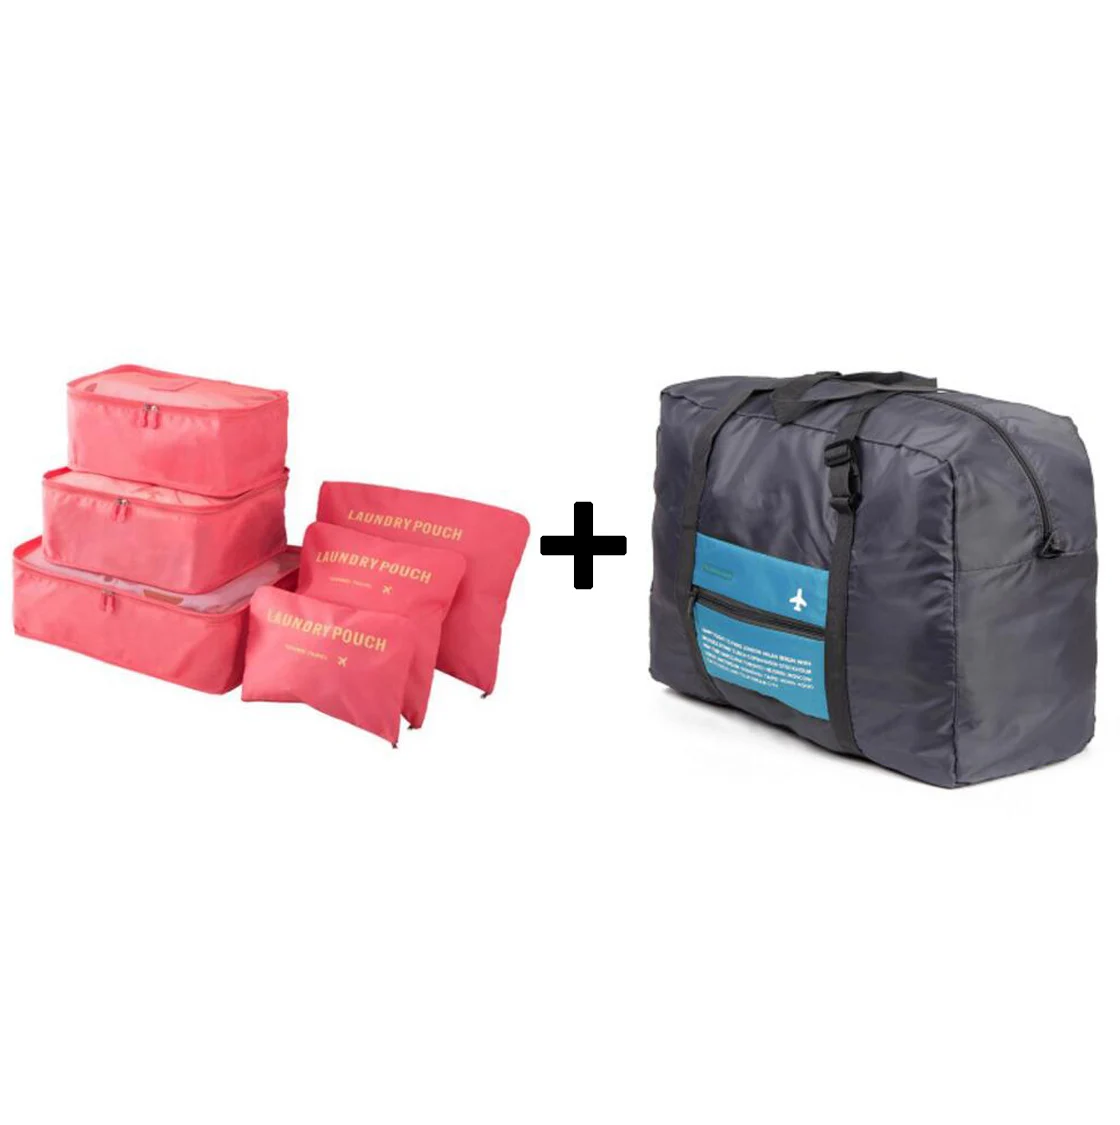 IUX вместительная сумка унисекс сумка для организации и сортировки одежды органайзер для багажа дорожная сумка Большая вместительная сумка женская нейлоновая - Цвет: watermelon red